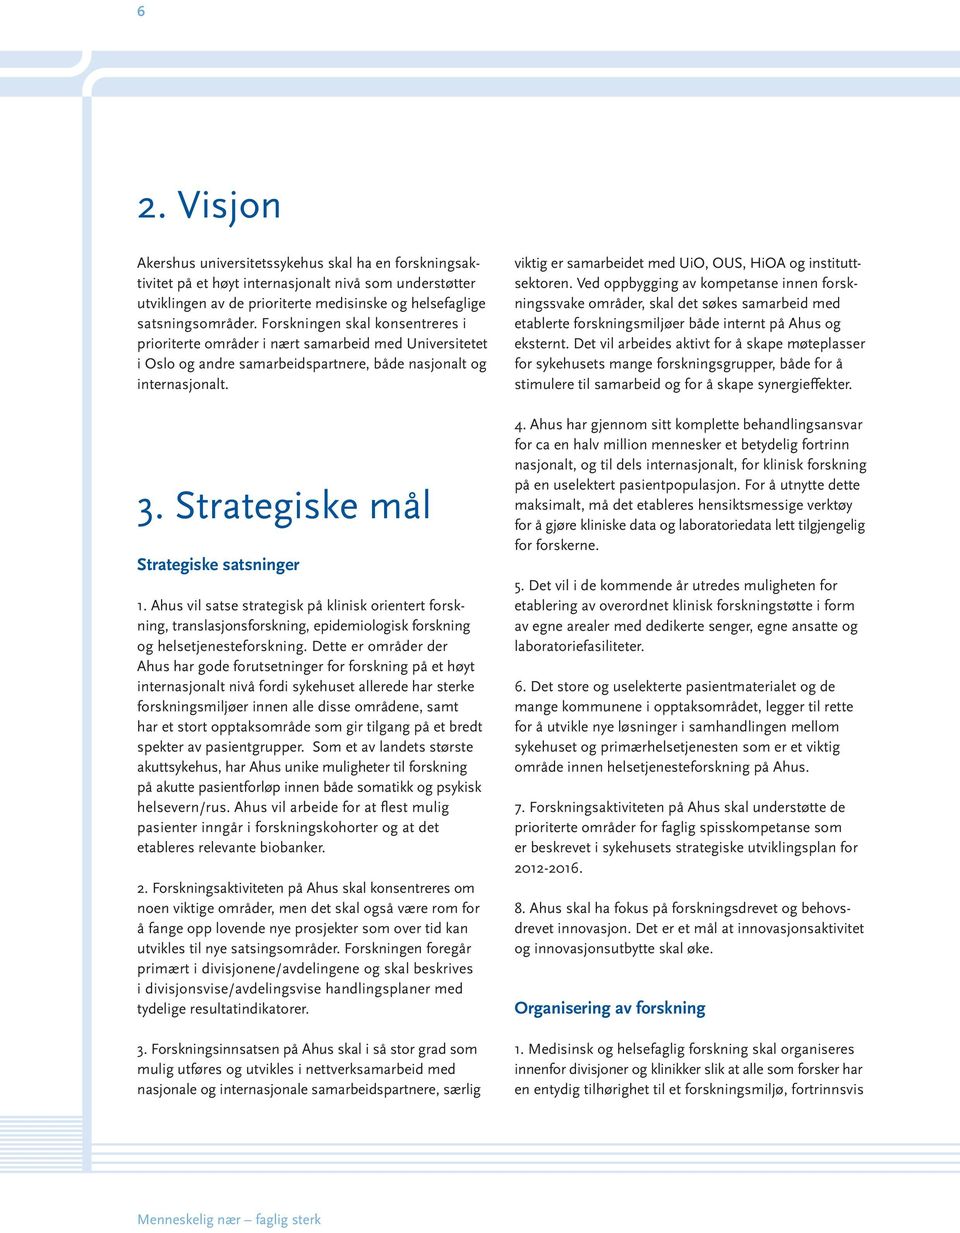 Strategiske mål Strategiske satsninger 1. Ahus vil satse strategisk på klinisk orientert forskning, translasjonsforskning, epidemiologisk forskning og helsetjenesteforskning.